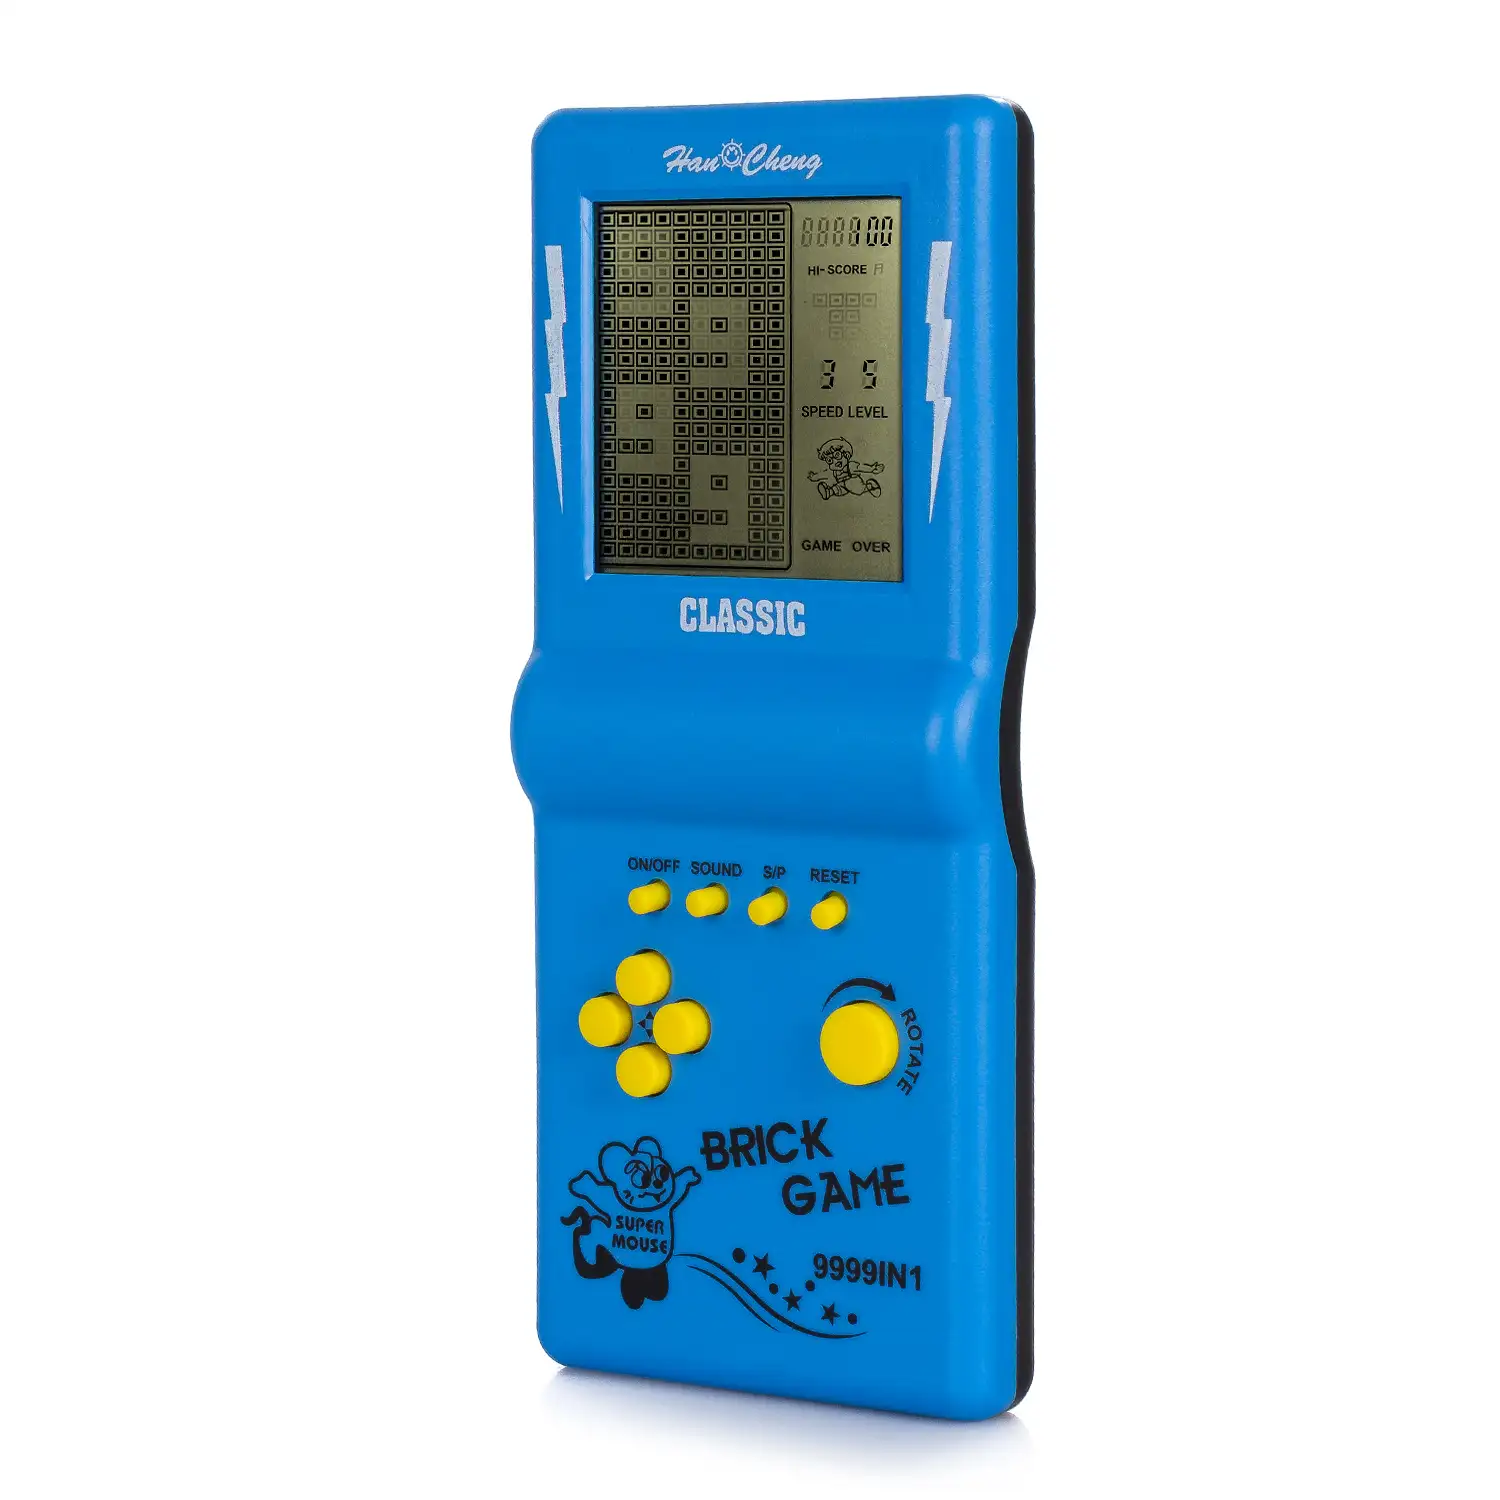 Consola portátil con 23 juegos clásicos Brick Game. Tetris, rompecabezas, dificultad y velocidad ajustable.